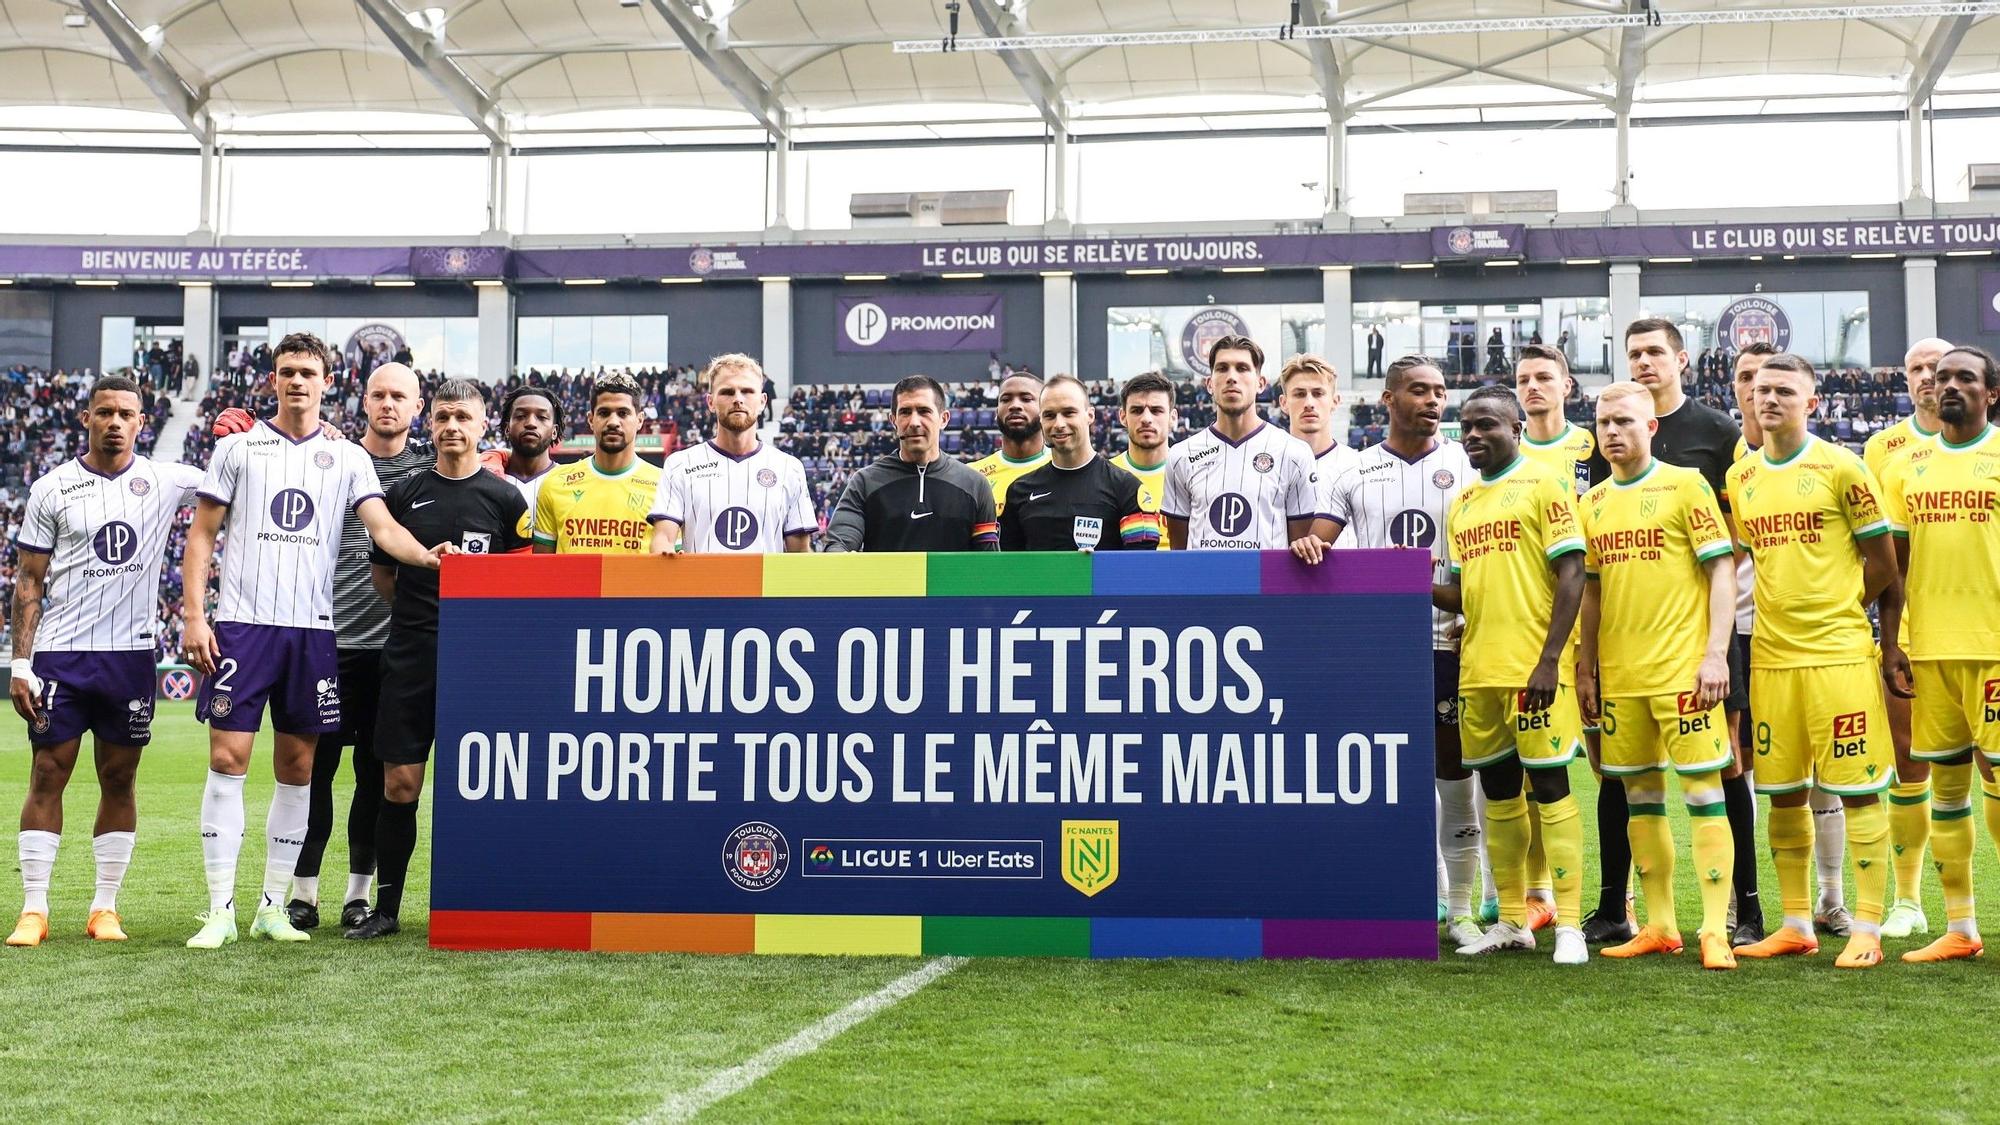 Jugadores del Toulouse y el Nantes, este domingo contra la homofobia.